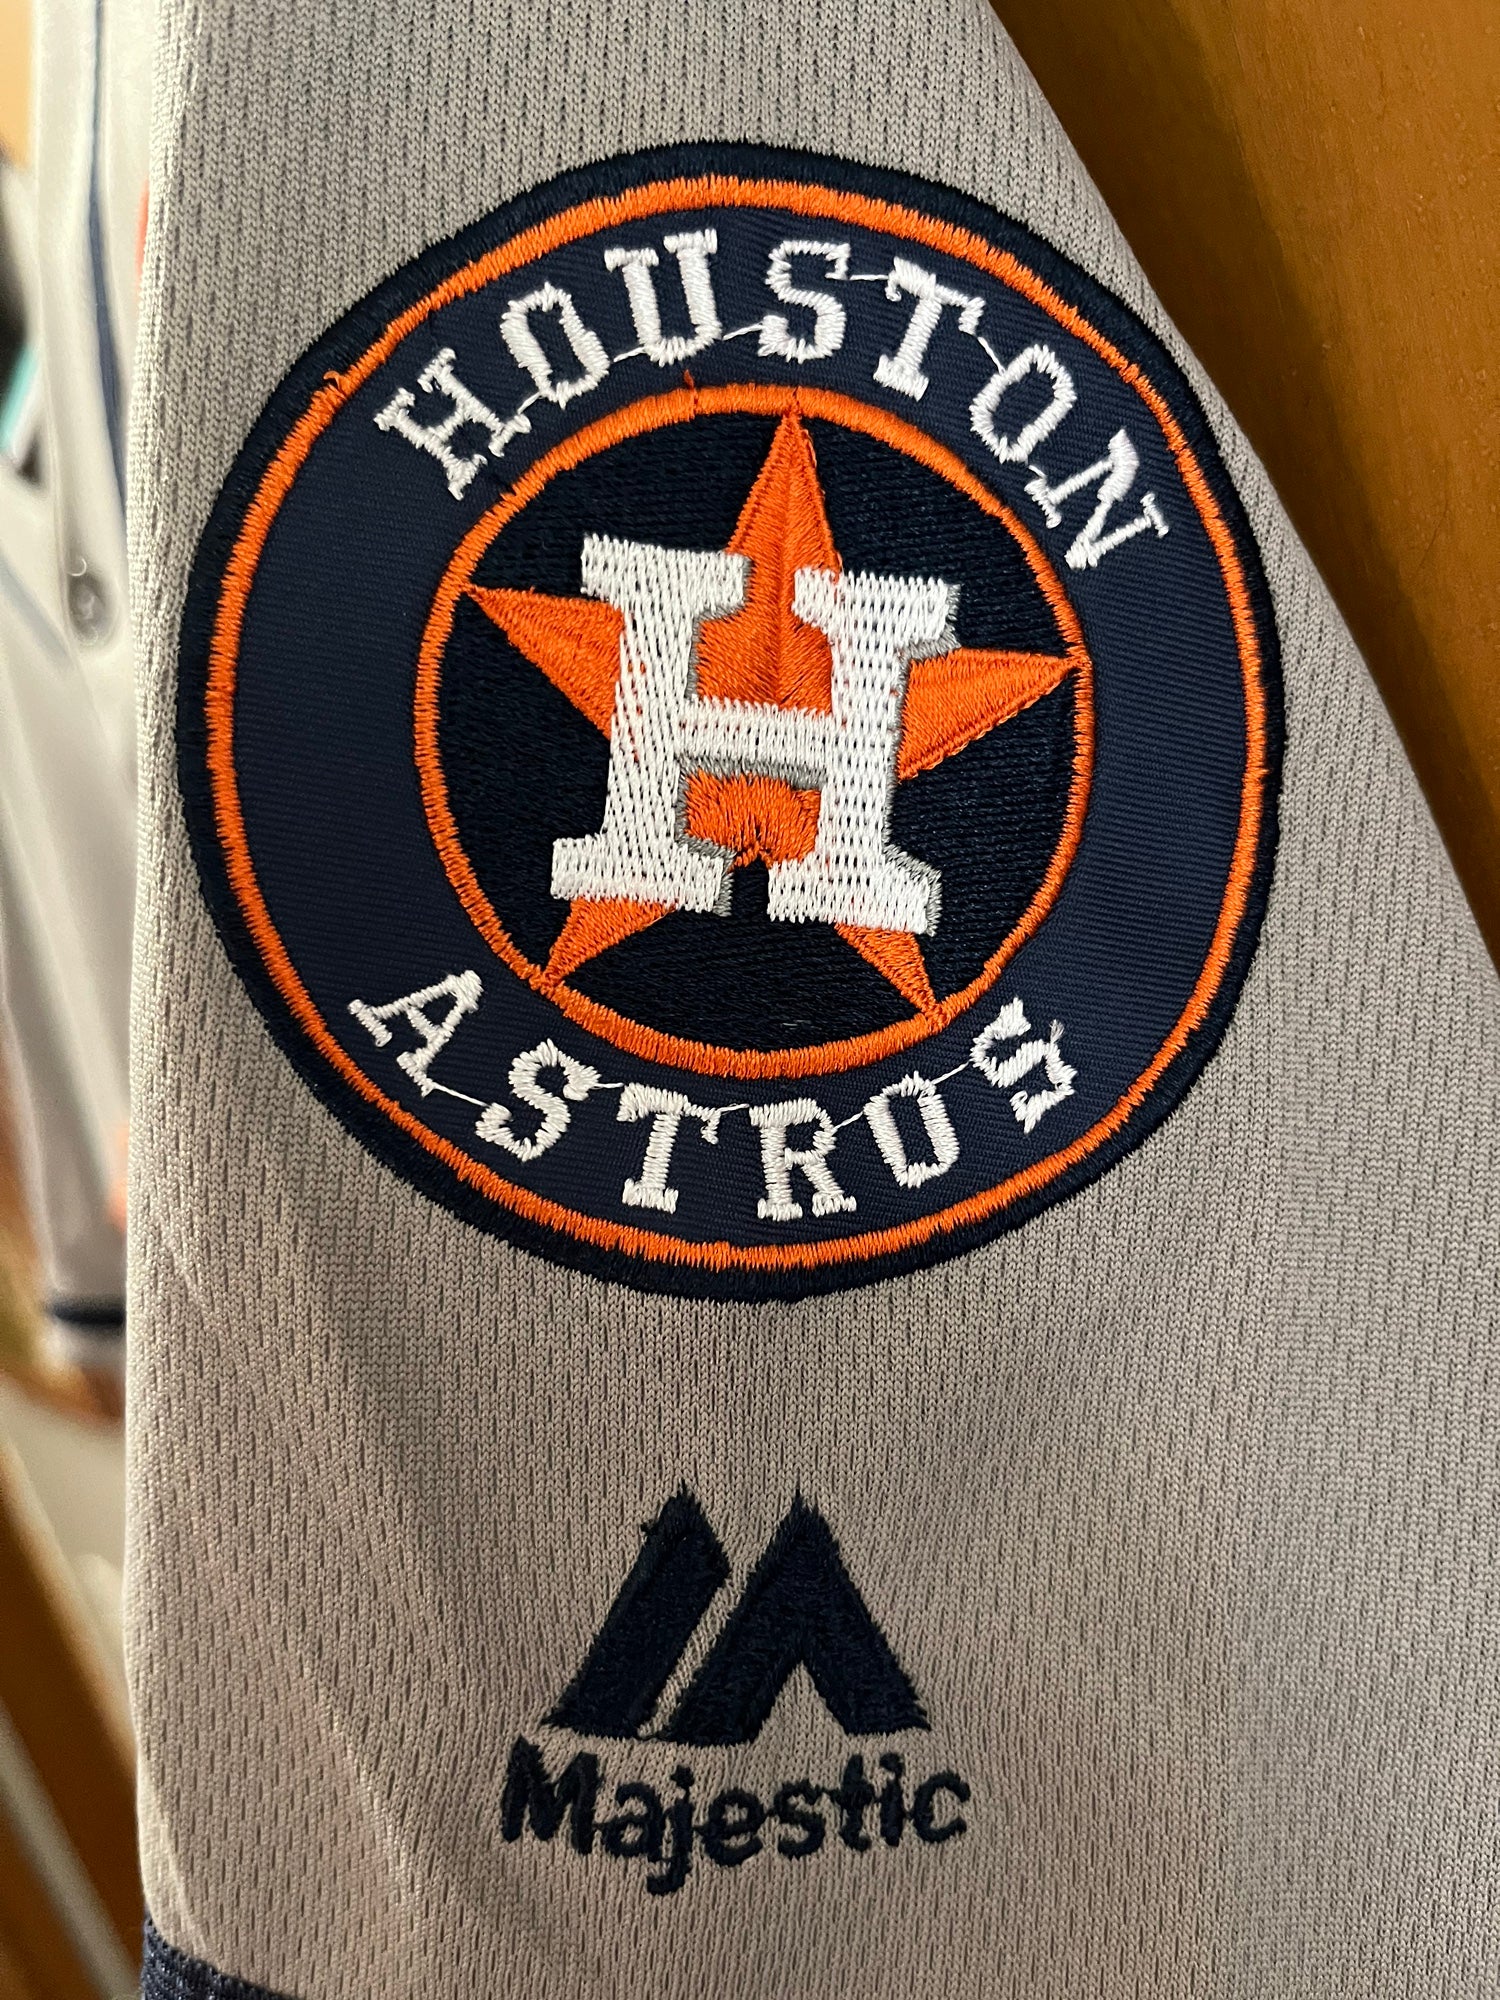 Jose Altuve #27 Houston Astros 2017 WS Jersey Size 40 NWT